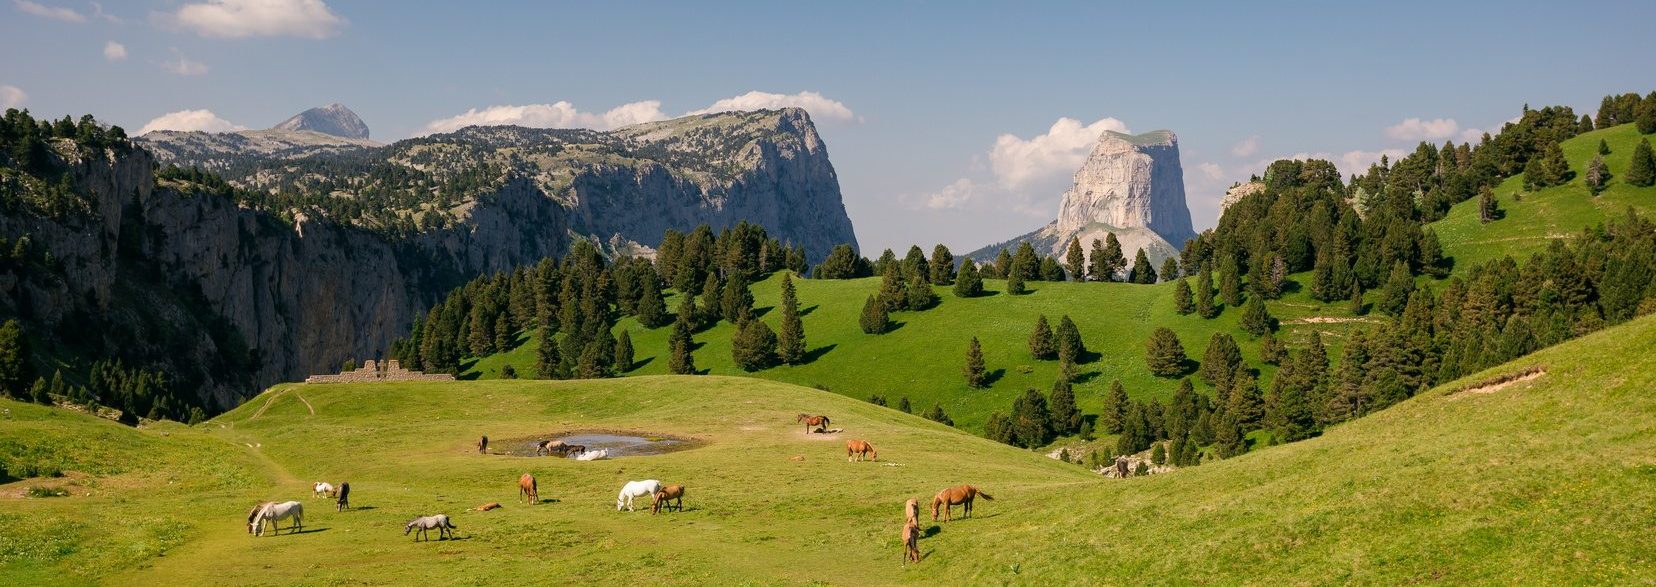 Panorama sur un troupeau de chevaux devant le Mont Aiguille dans le Vercors Trièves